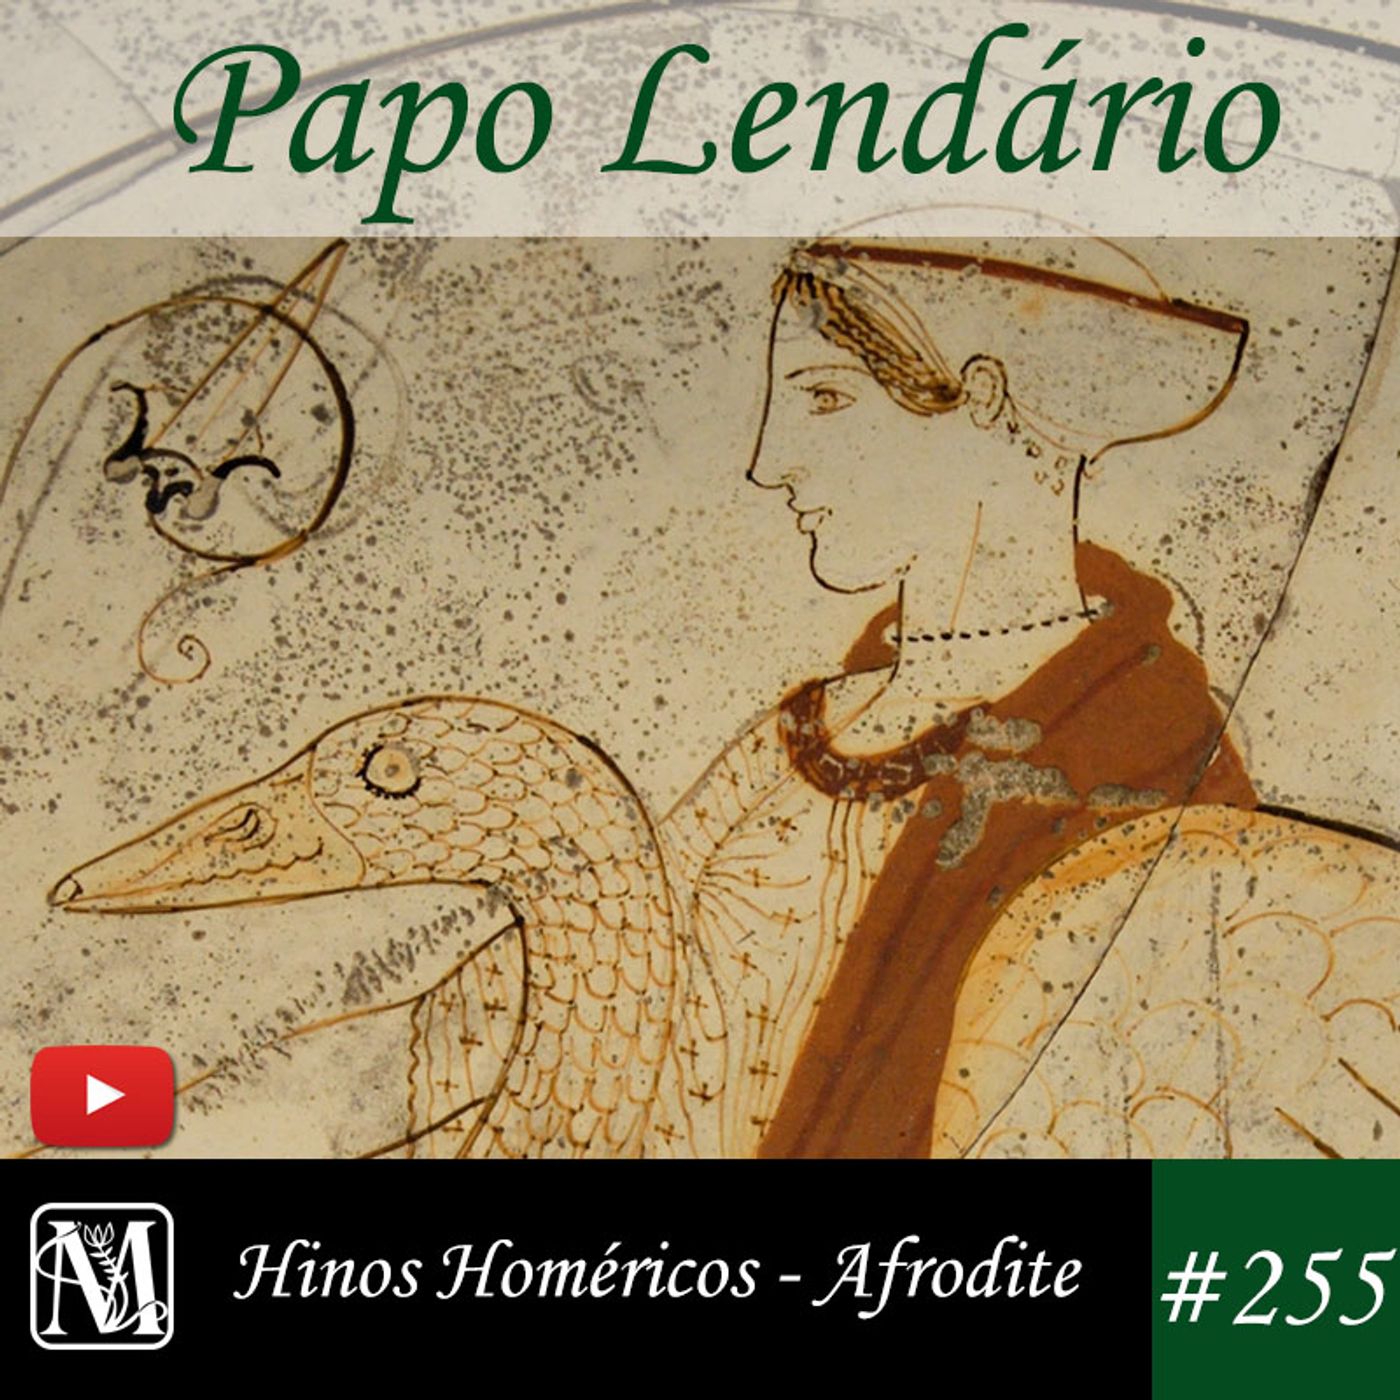 Papo Lendário #255 – Hinos Homéricos - Afrodite